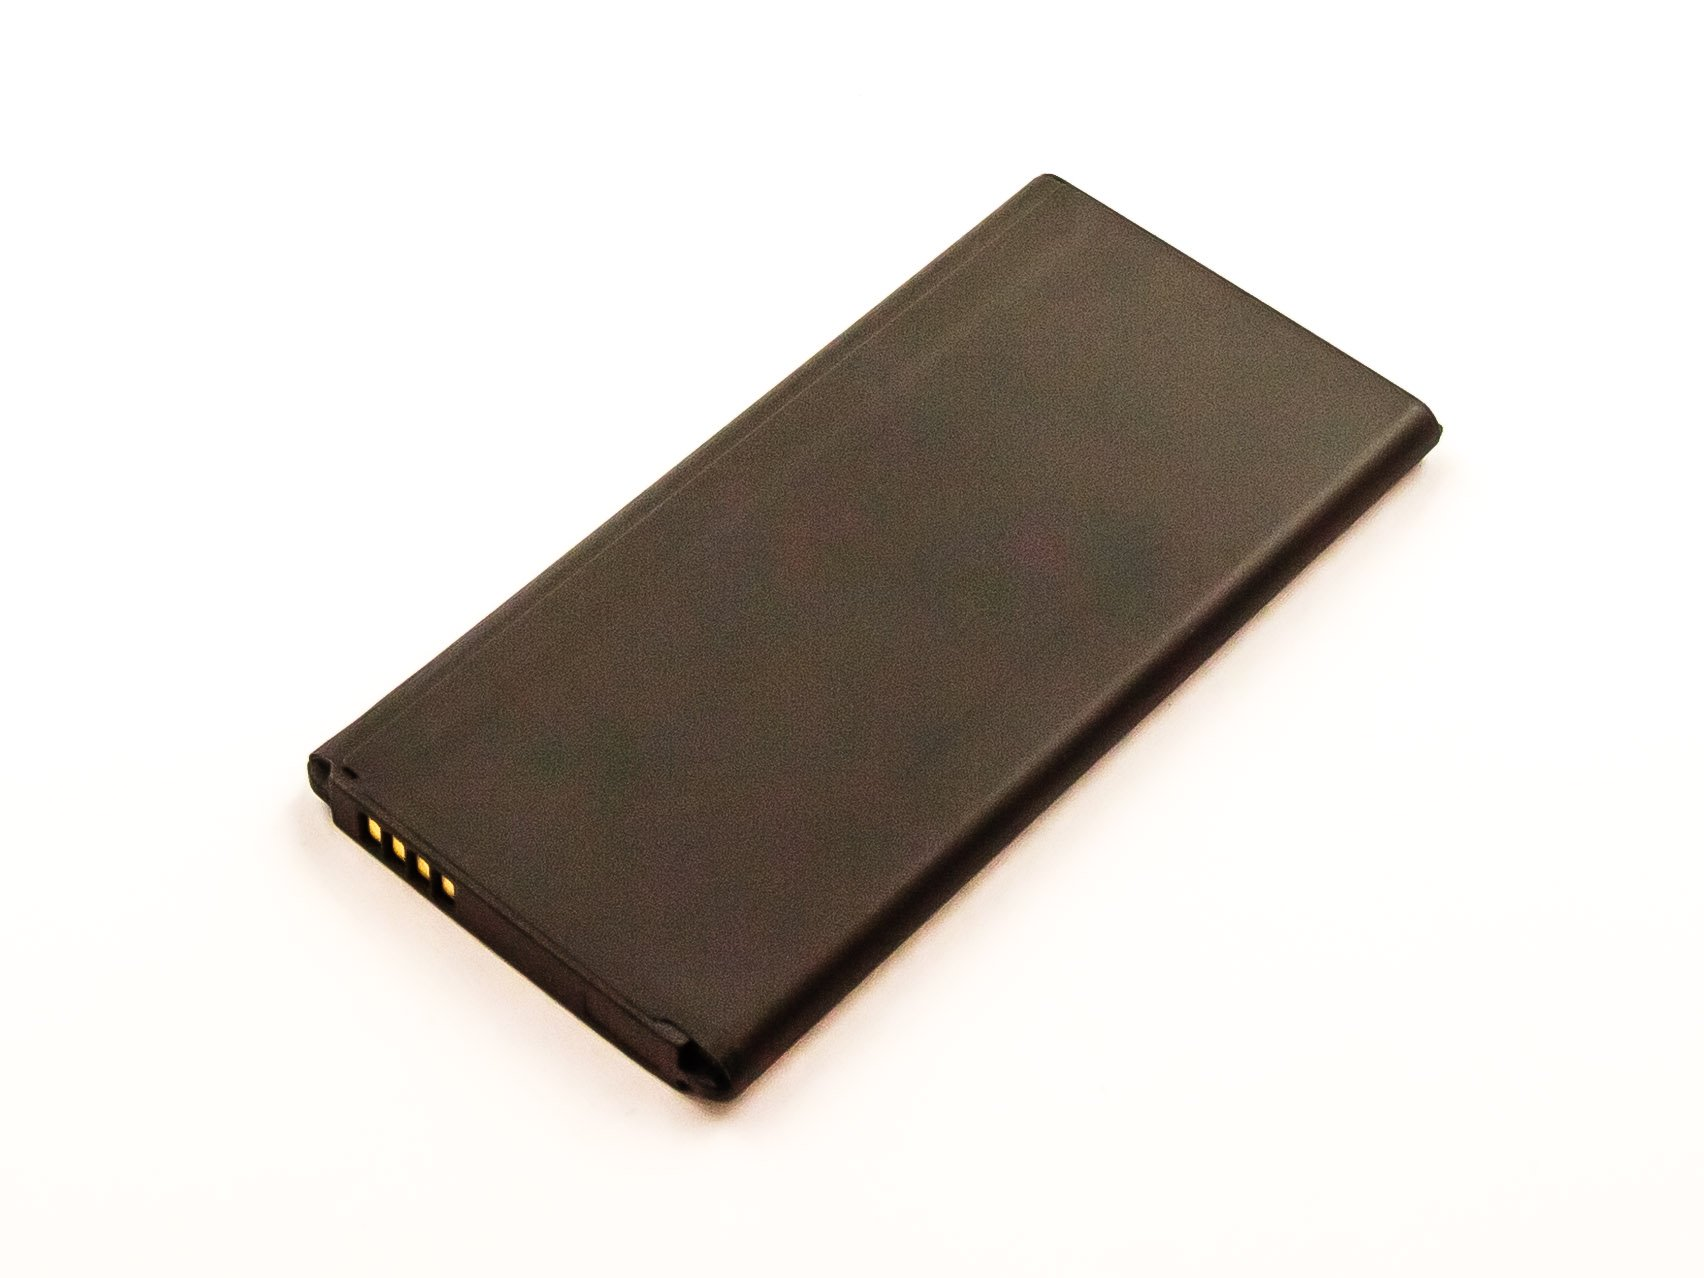 AGI Akku kompatibel mit Samsung Li-Ion 3.85 Handy-/Smartphoneakku, Volt, Li-Ion, EB-BG900 2800 mAh